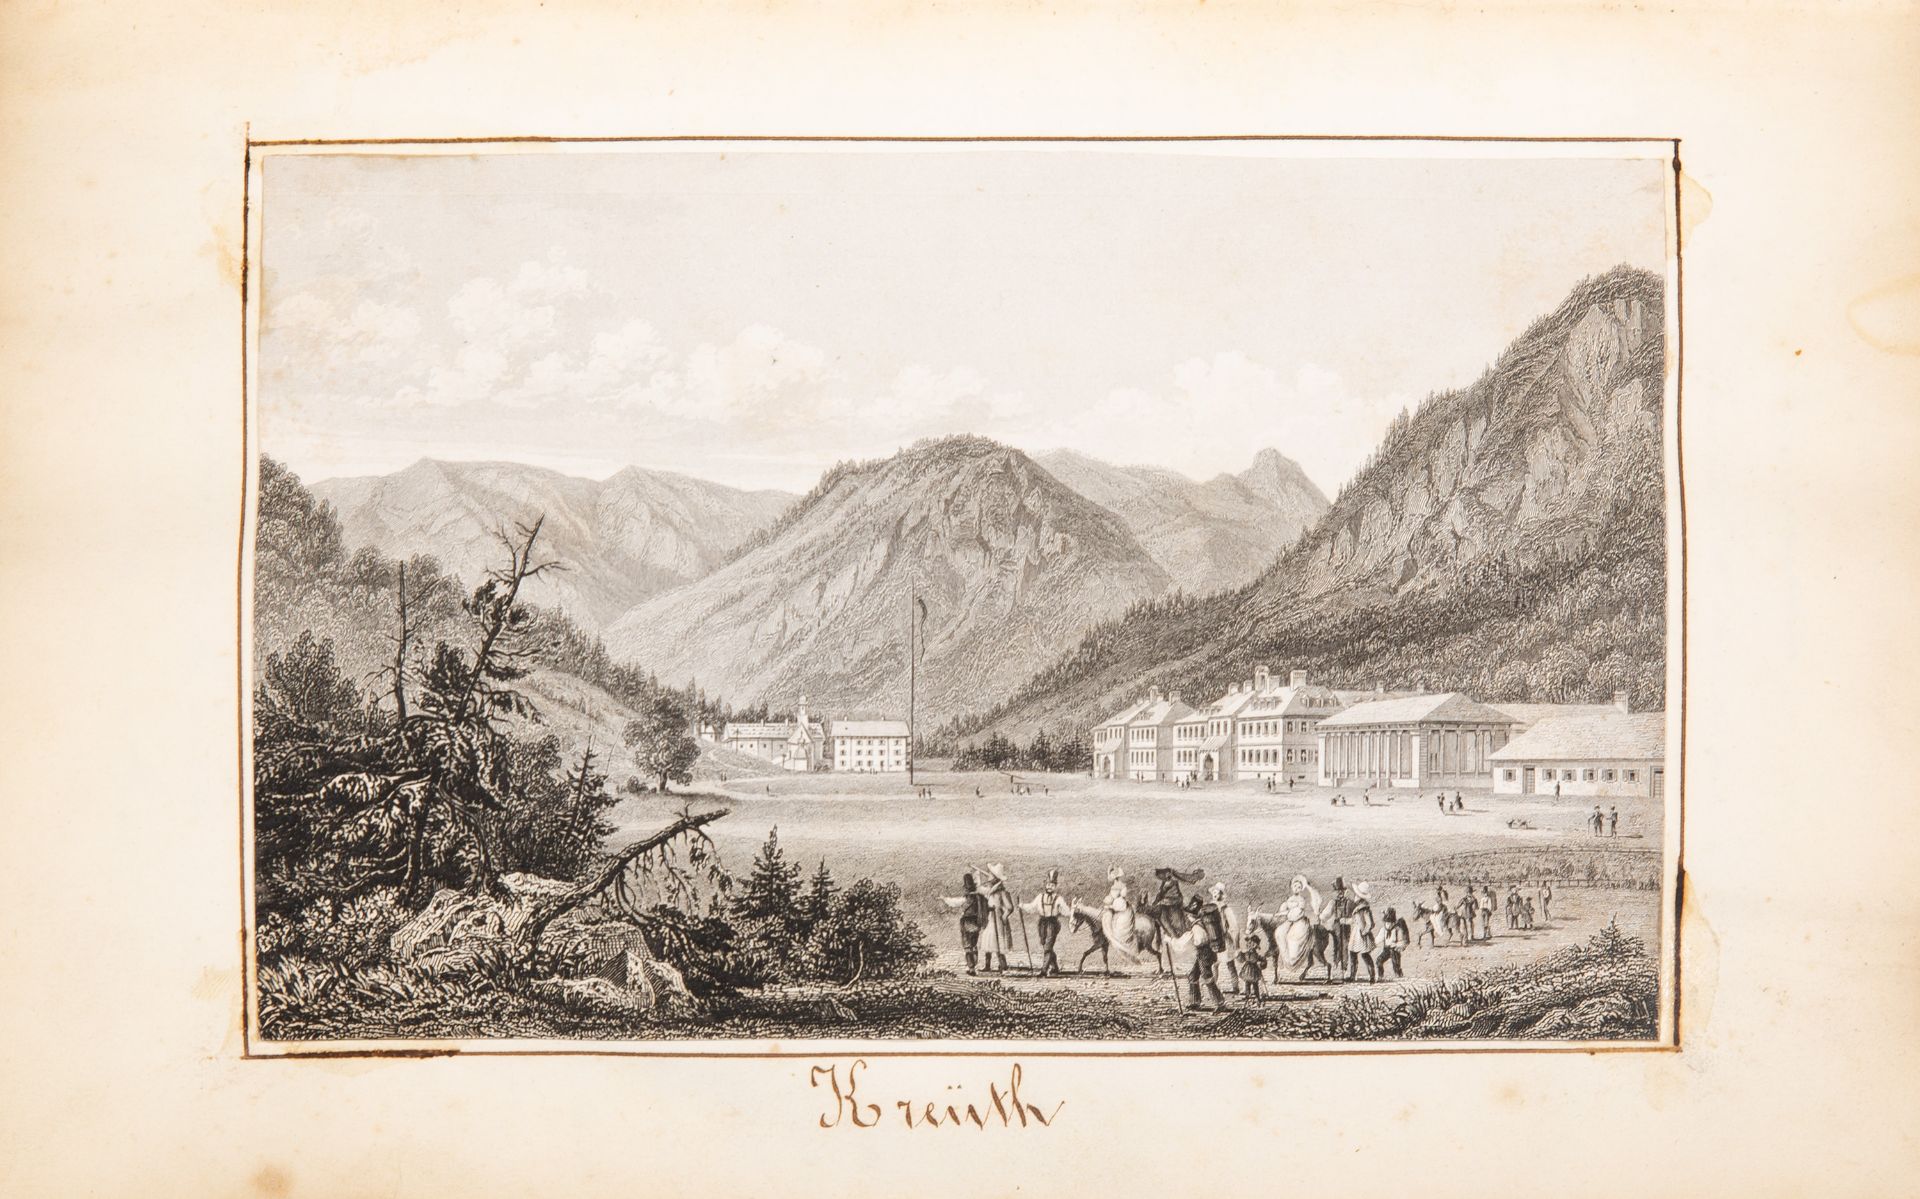 Souvenirs de voyages 1854. Privates Sammelalbum mit Ansichten und Reiseandenken.